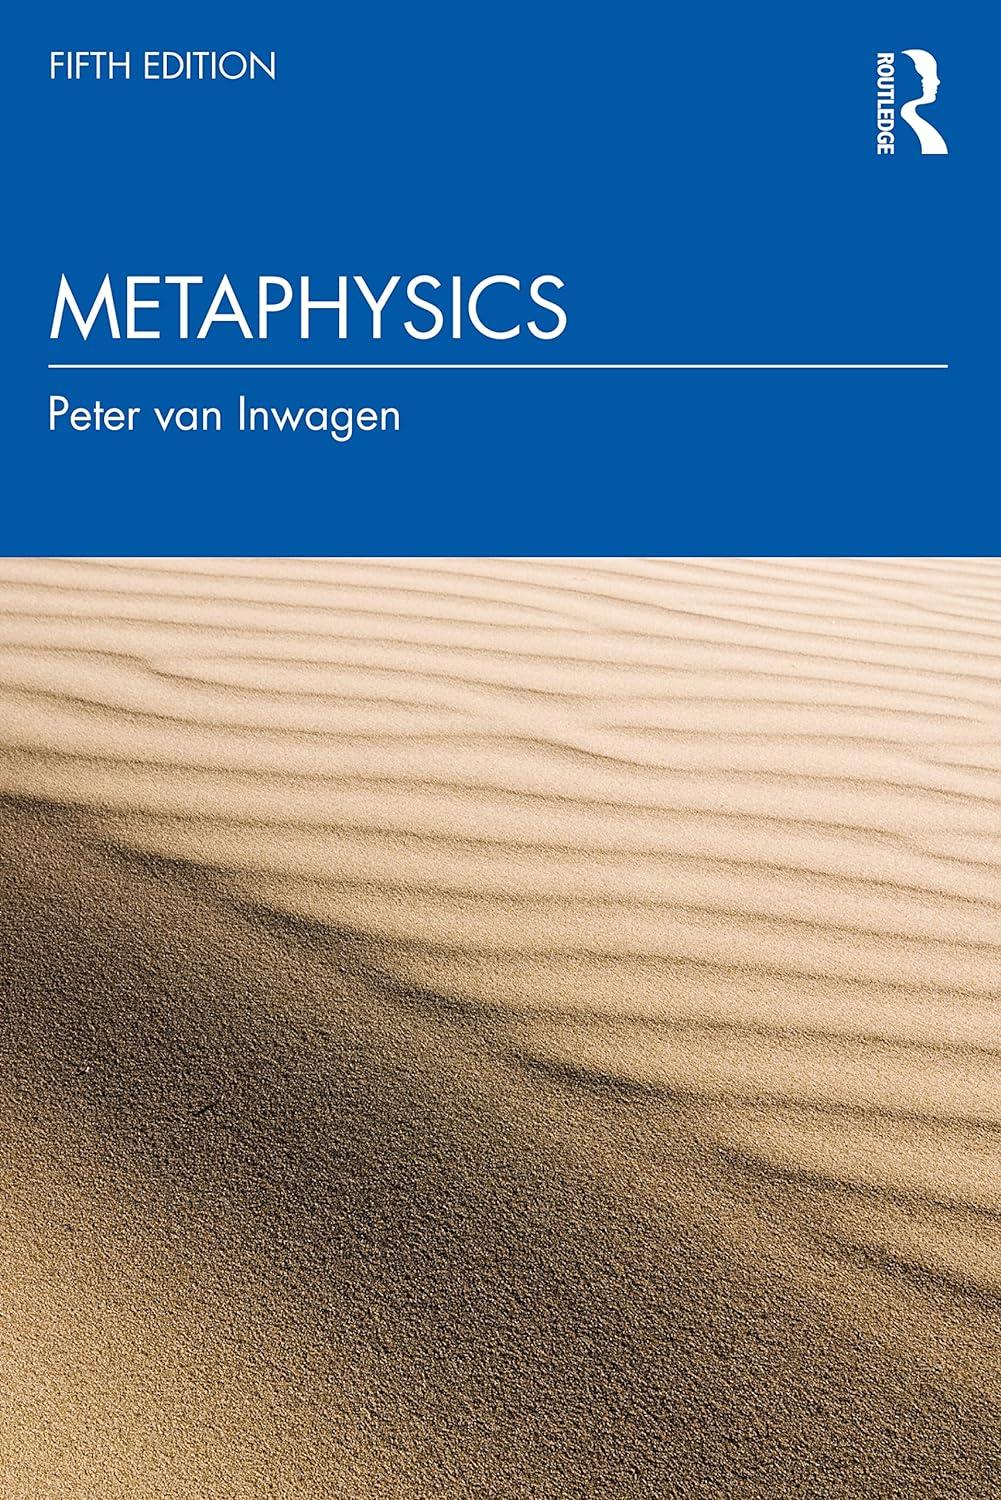 metaphysics 5th edition peter van inwagen 1032409150, 978-1032409153